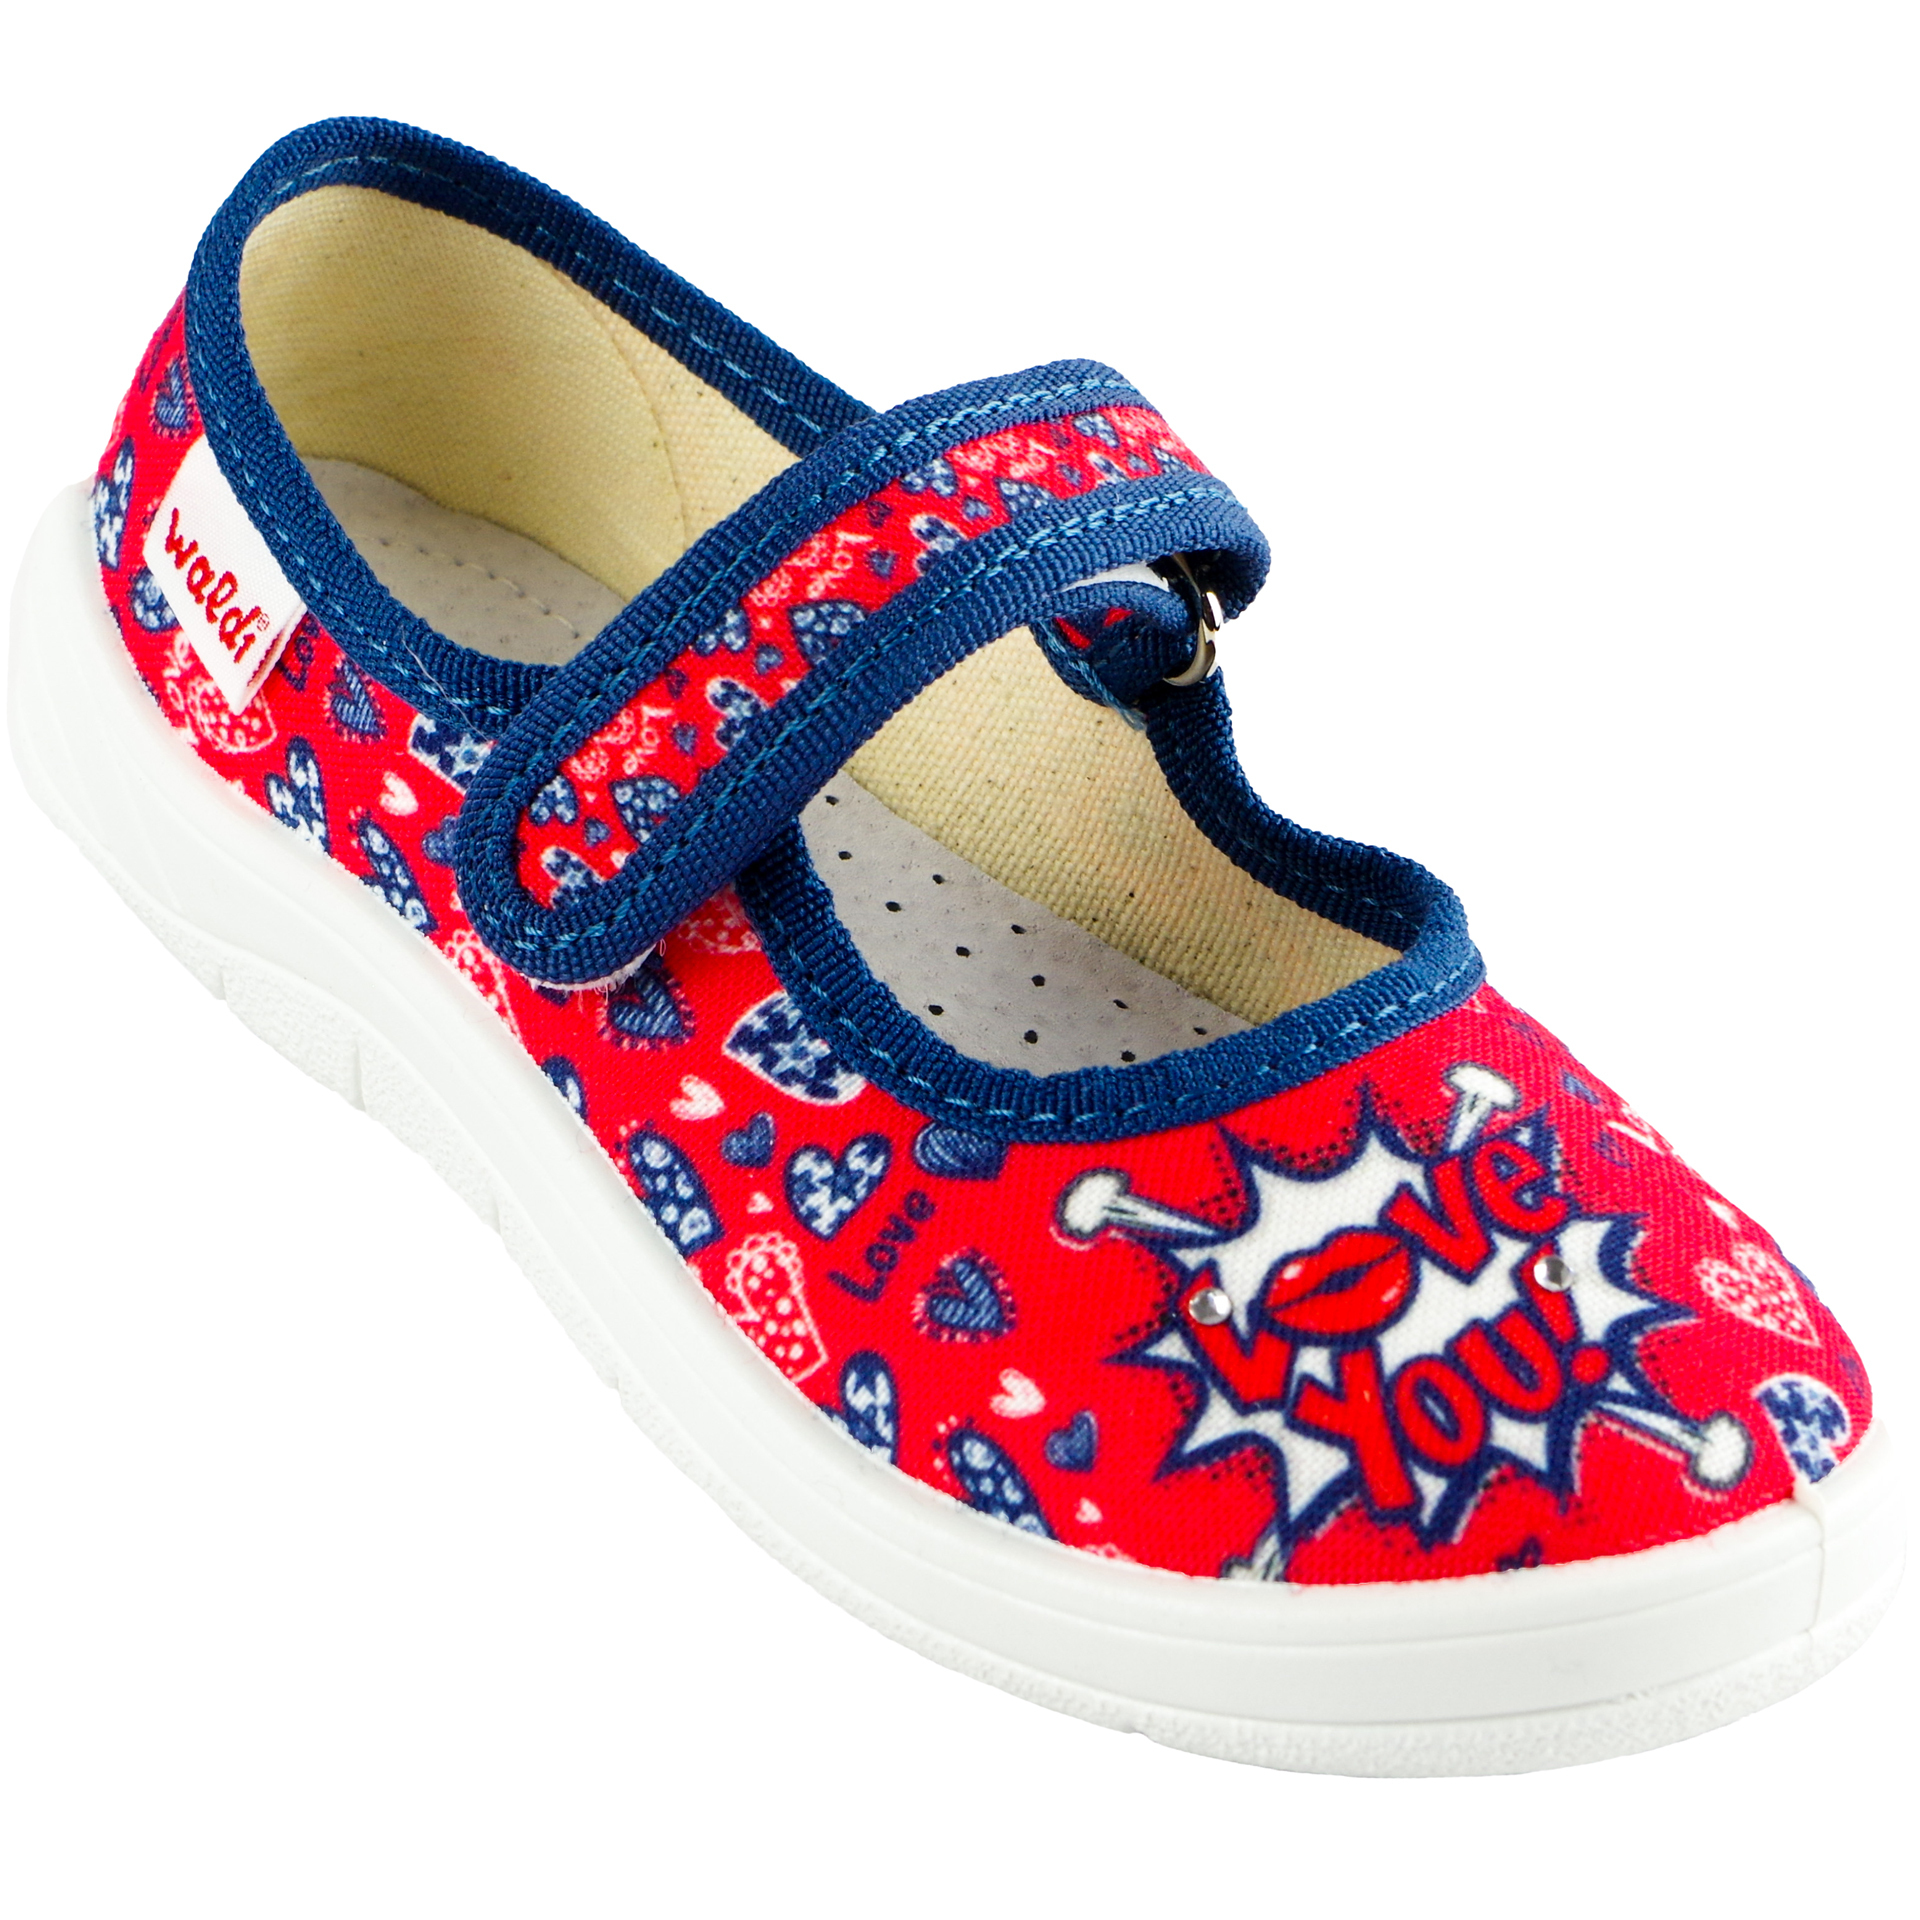 Текстильная обувь для девочек Тапочки Катя (1818) цвет Красный 24-30 размеры – Sole Kids